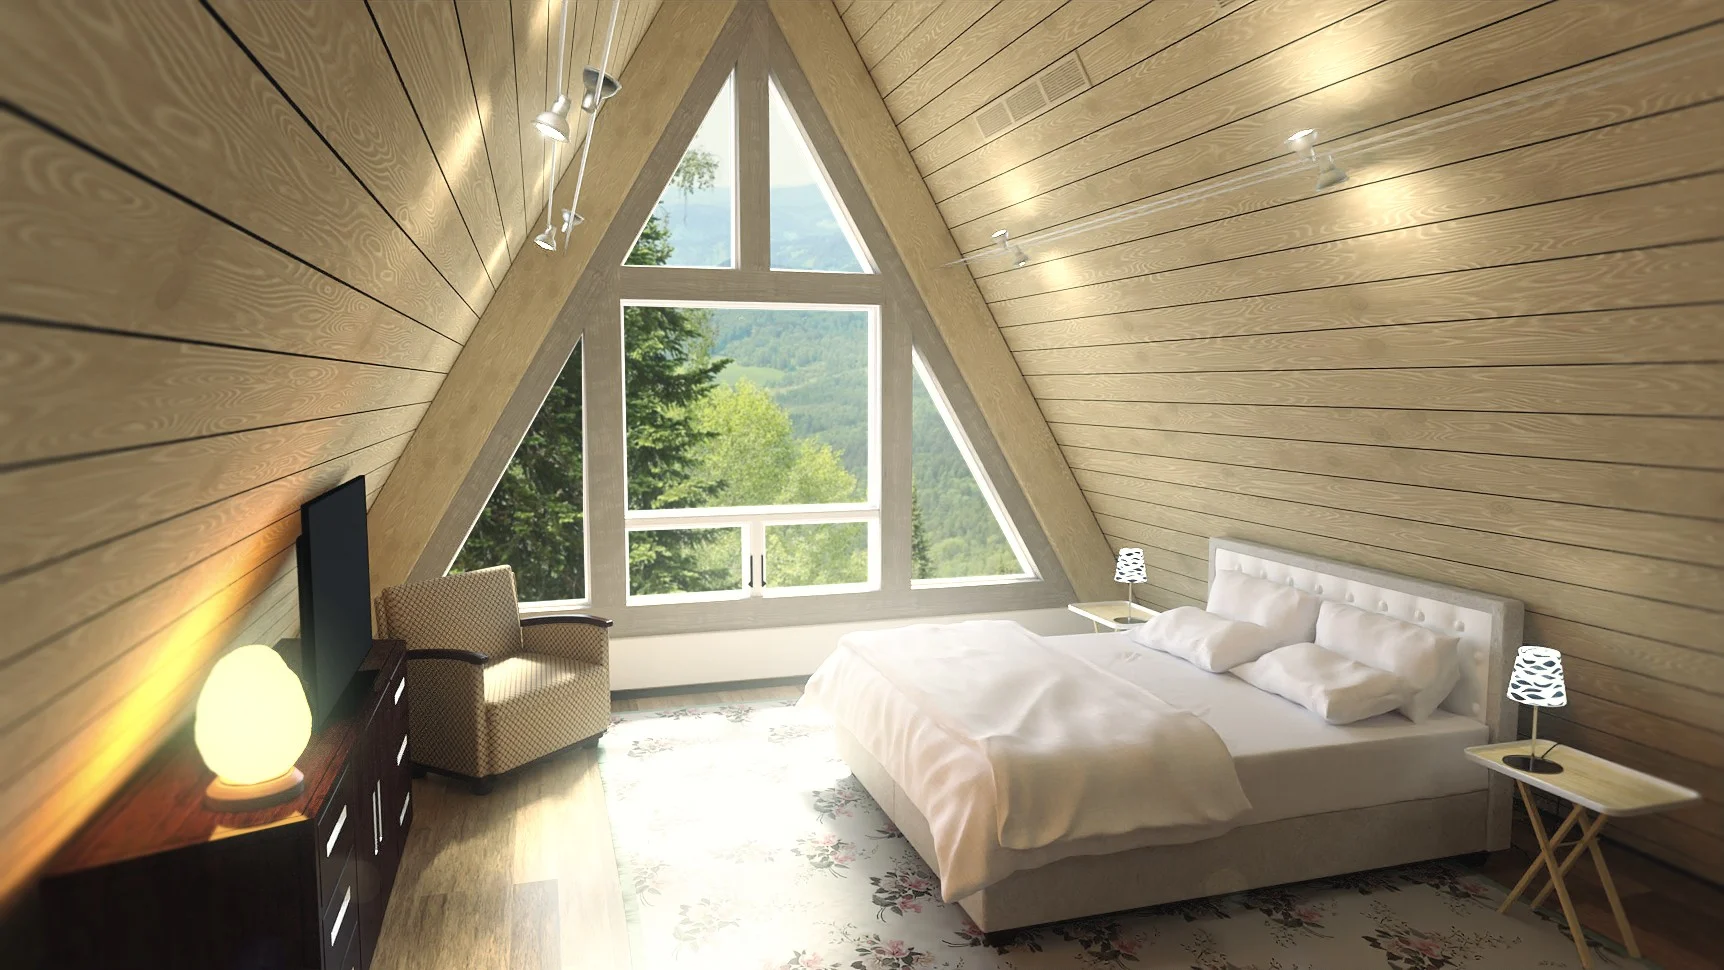 Una finestra della camera da letto in soffitta